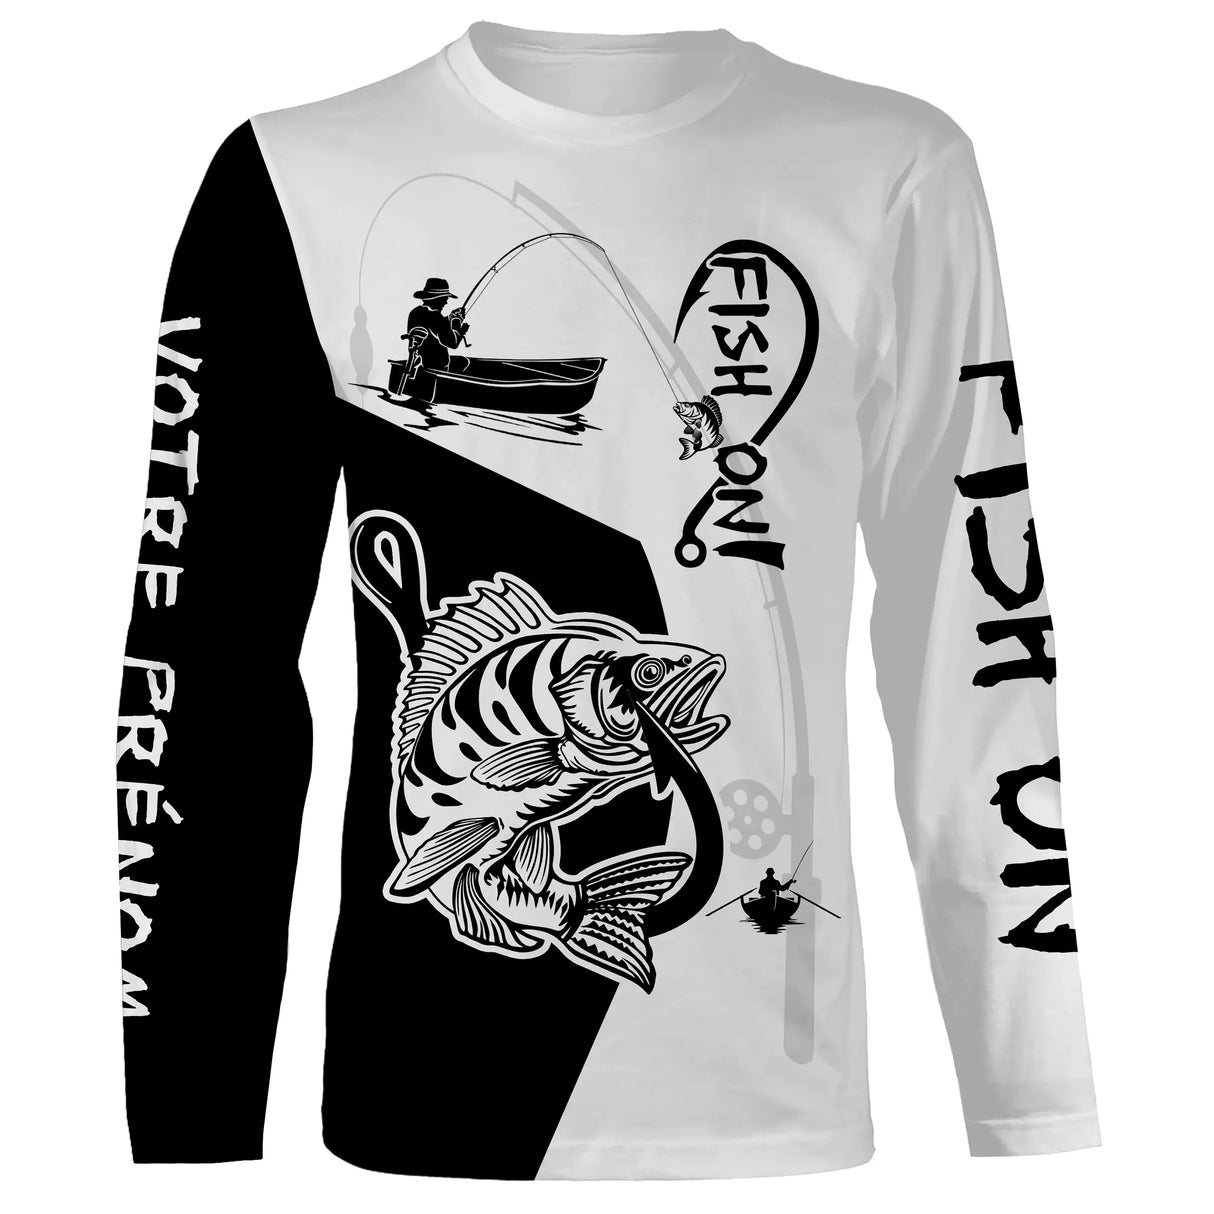 T-Shirt de Pêche 'Fish On' - Style Graphique Dynamique, Confort Respirant, Essentiel pour Pêcheurs Actifs - CT20072214 T-shirt All Over Manches Longues Unisexe